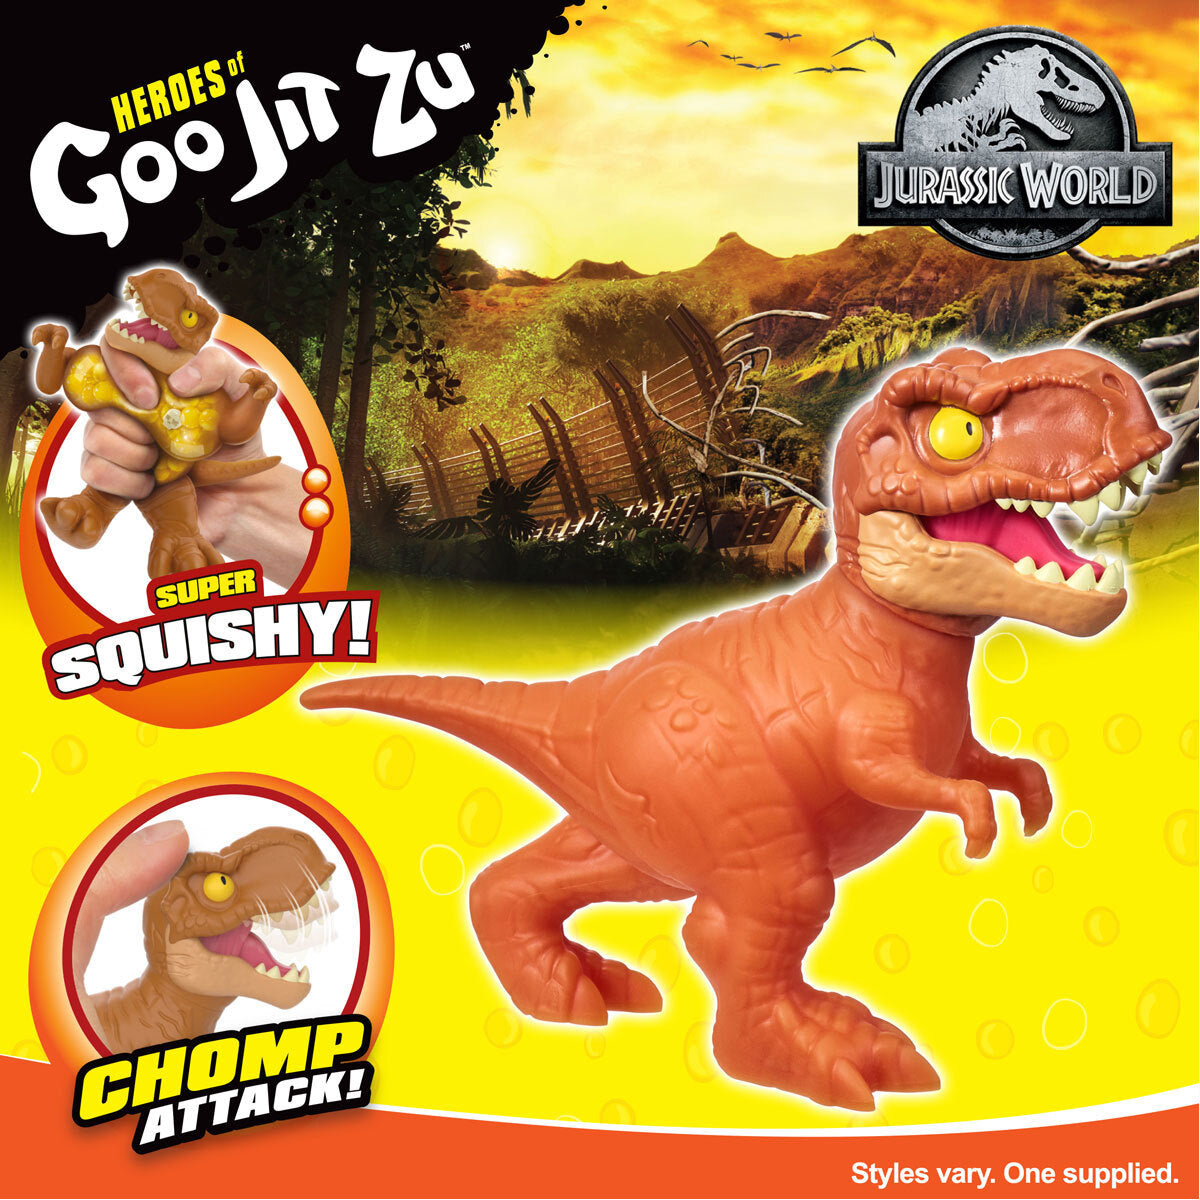 Heroes of Goo Jit Zu - Jurassic World T.Rex